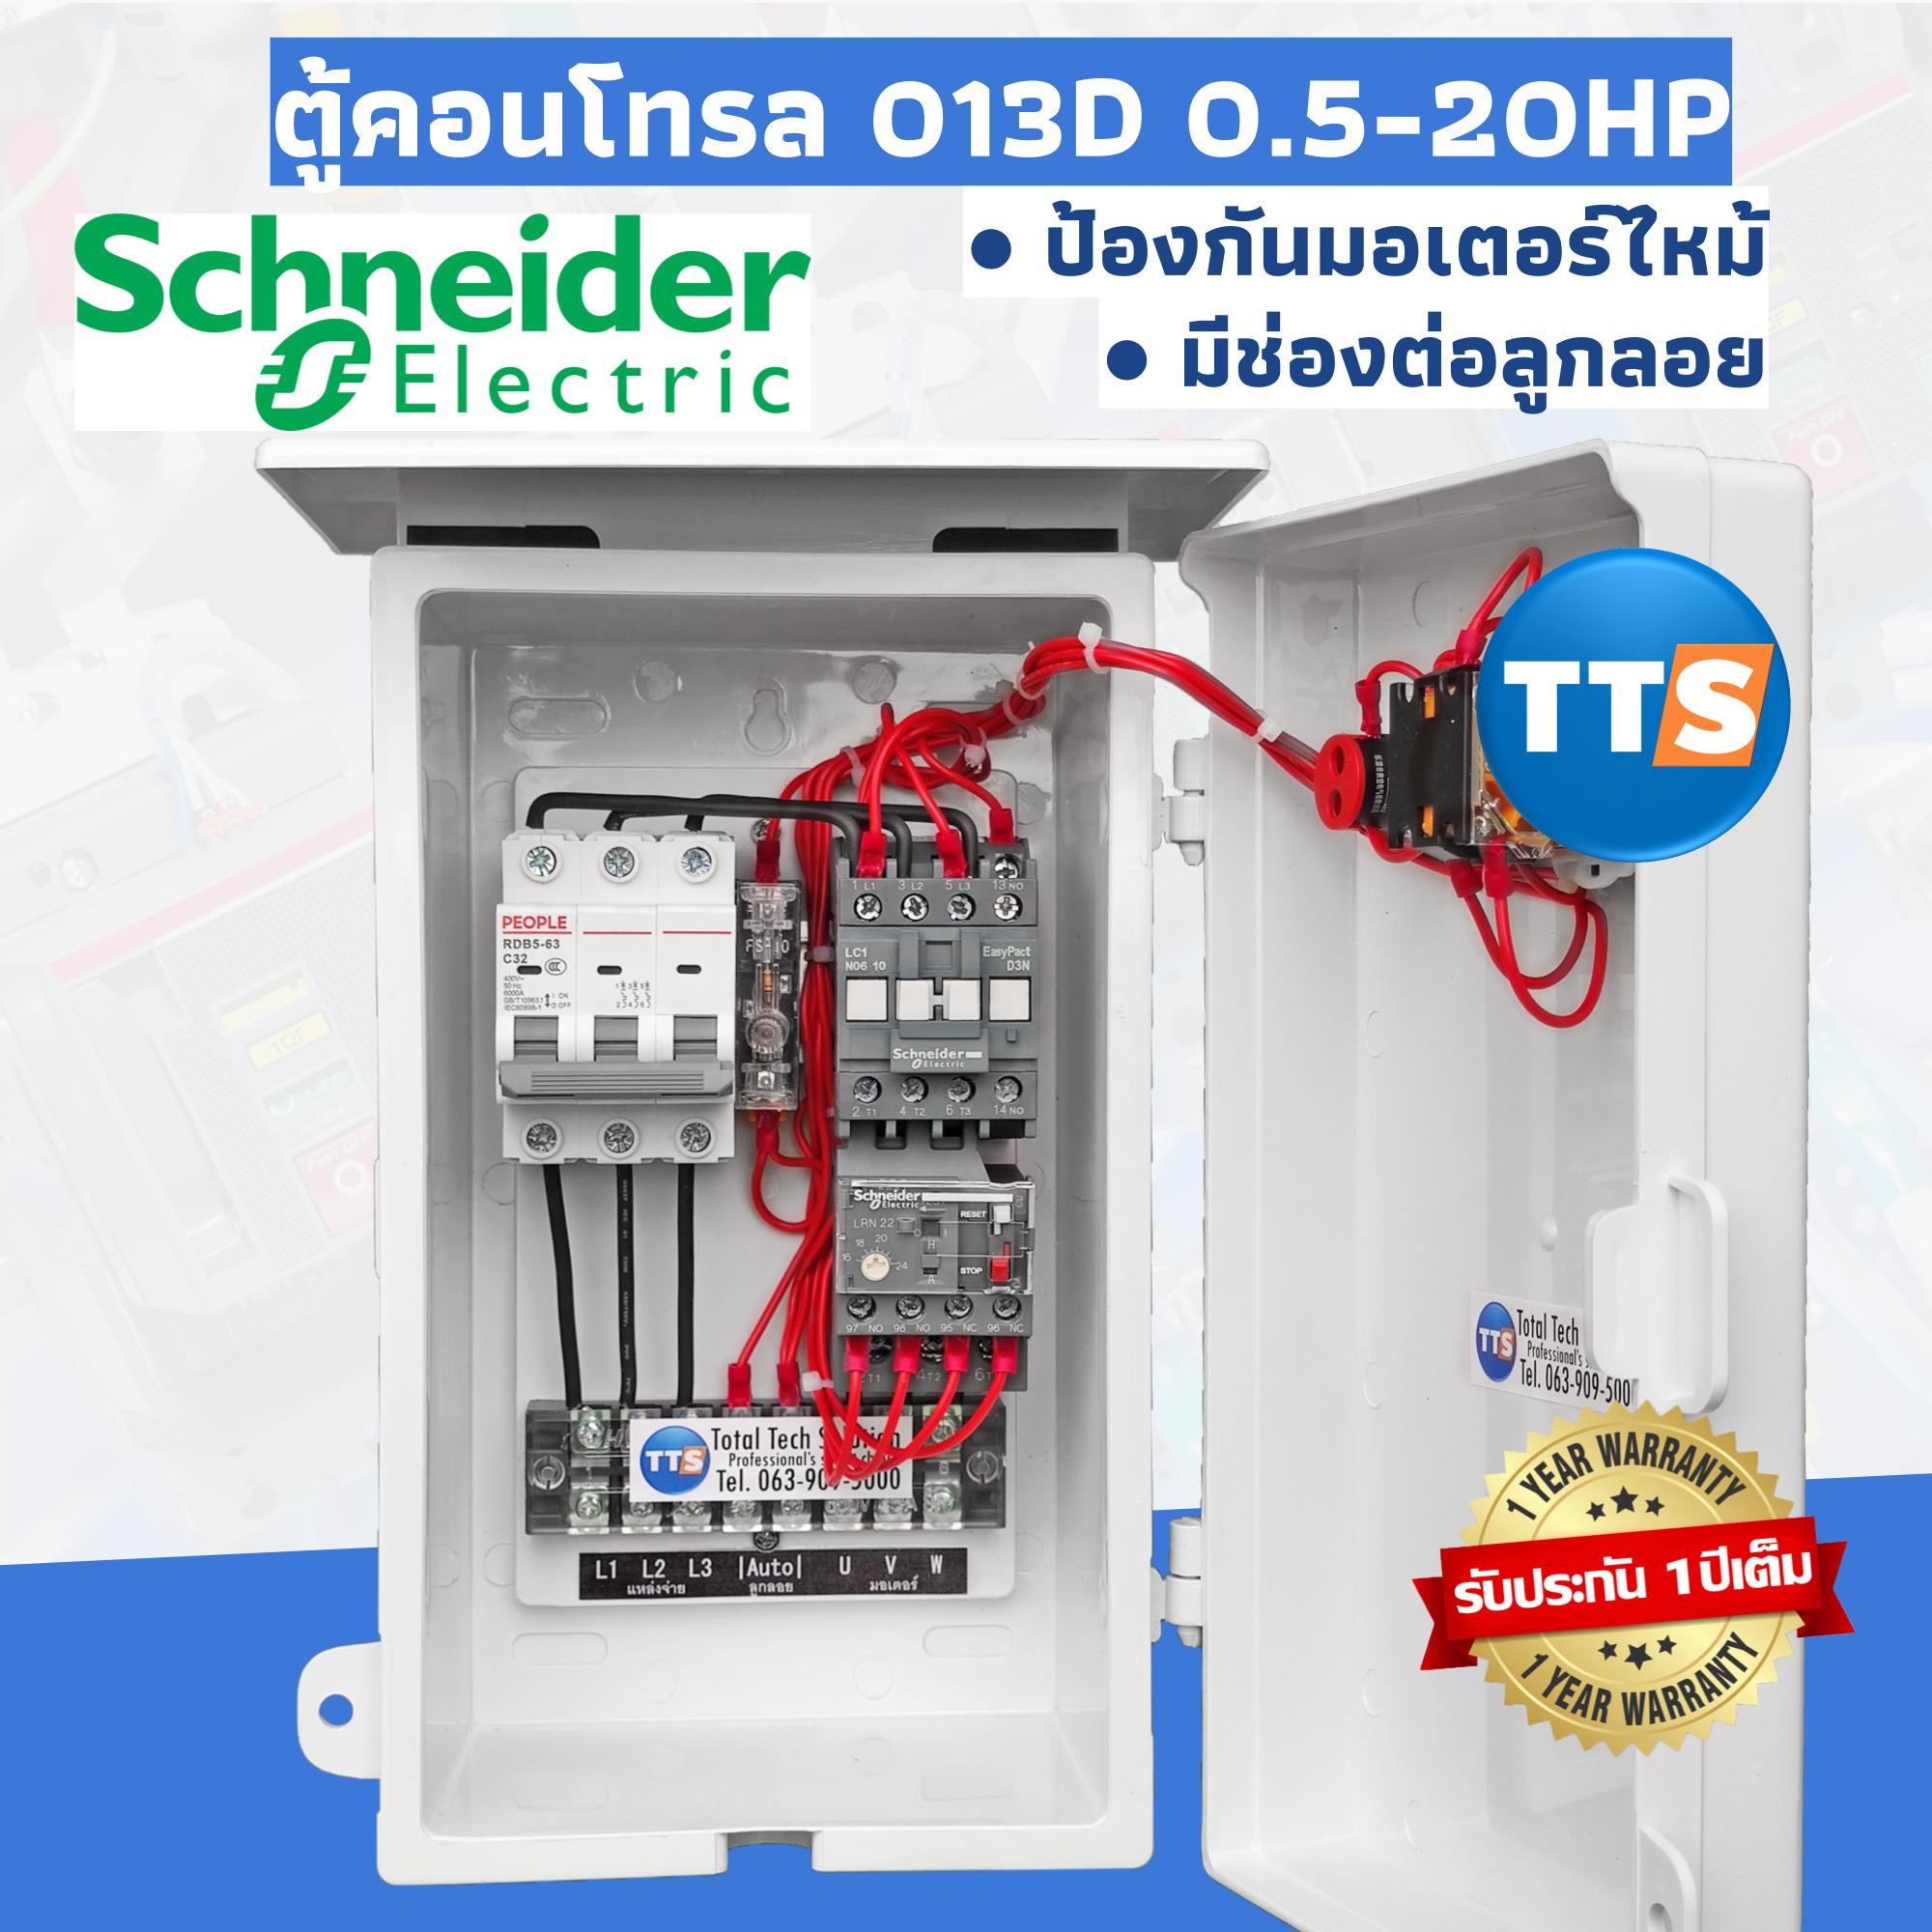 ตู้คอนโทรลมอเตอร์ Schneider 0.5-20HP 3เฟส 380VAC ป้องกันมอเตอร์ไหม้ คุมปั๊มน้ำ ต่อลูกลอย